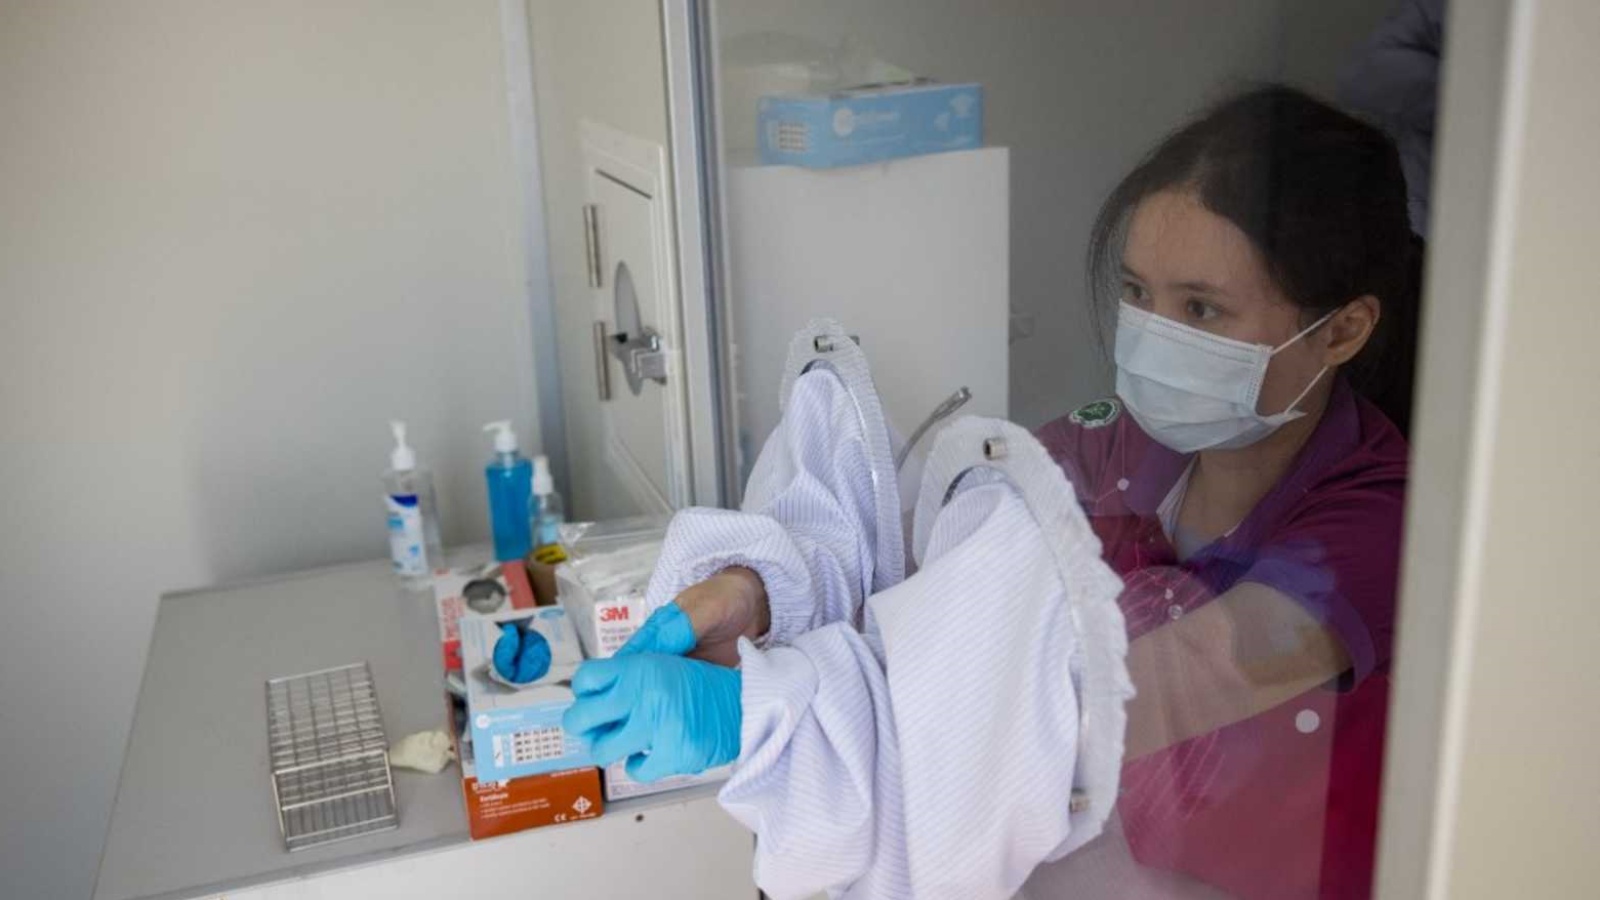 عاملة صحية تتخلص من القفازات الملوثة في غرفة مخصصة للعزل في إحدى المستشفيات. (أرشيفية)